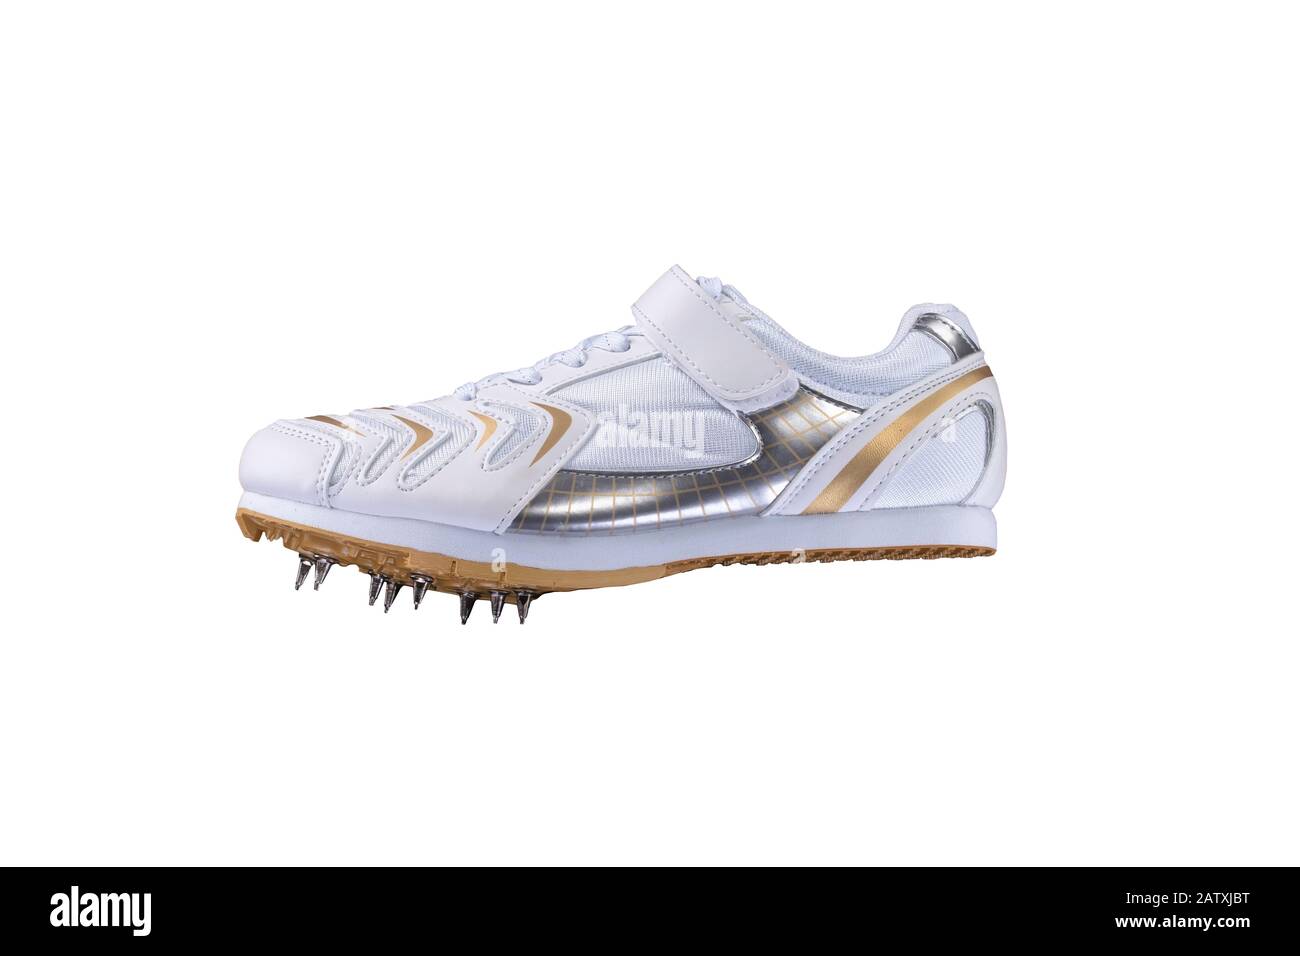 Sportschuhe auf weißem Hintergrund. Weißer Sneaker mit Spitzen. Laufschuhe  aus Leder Stockfotografie - Alamy